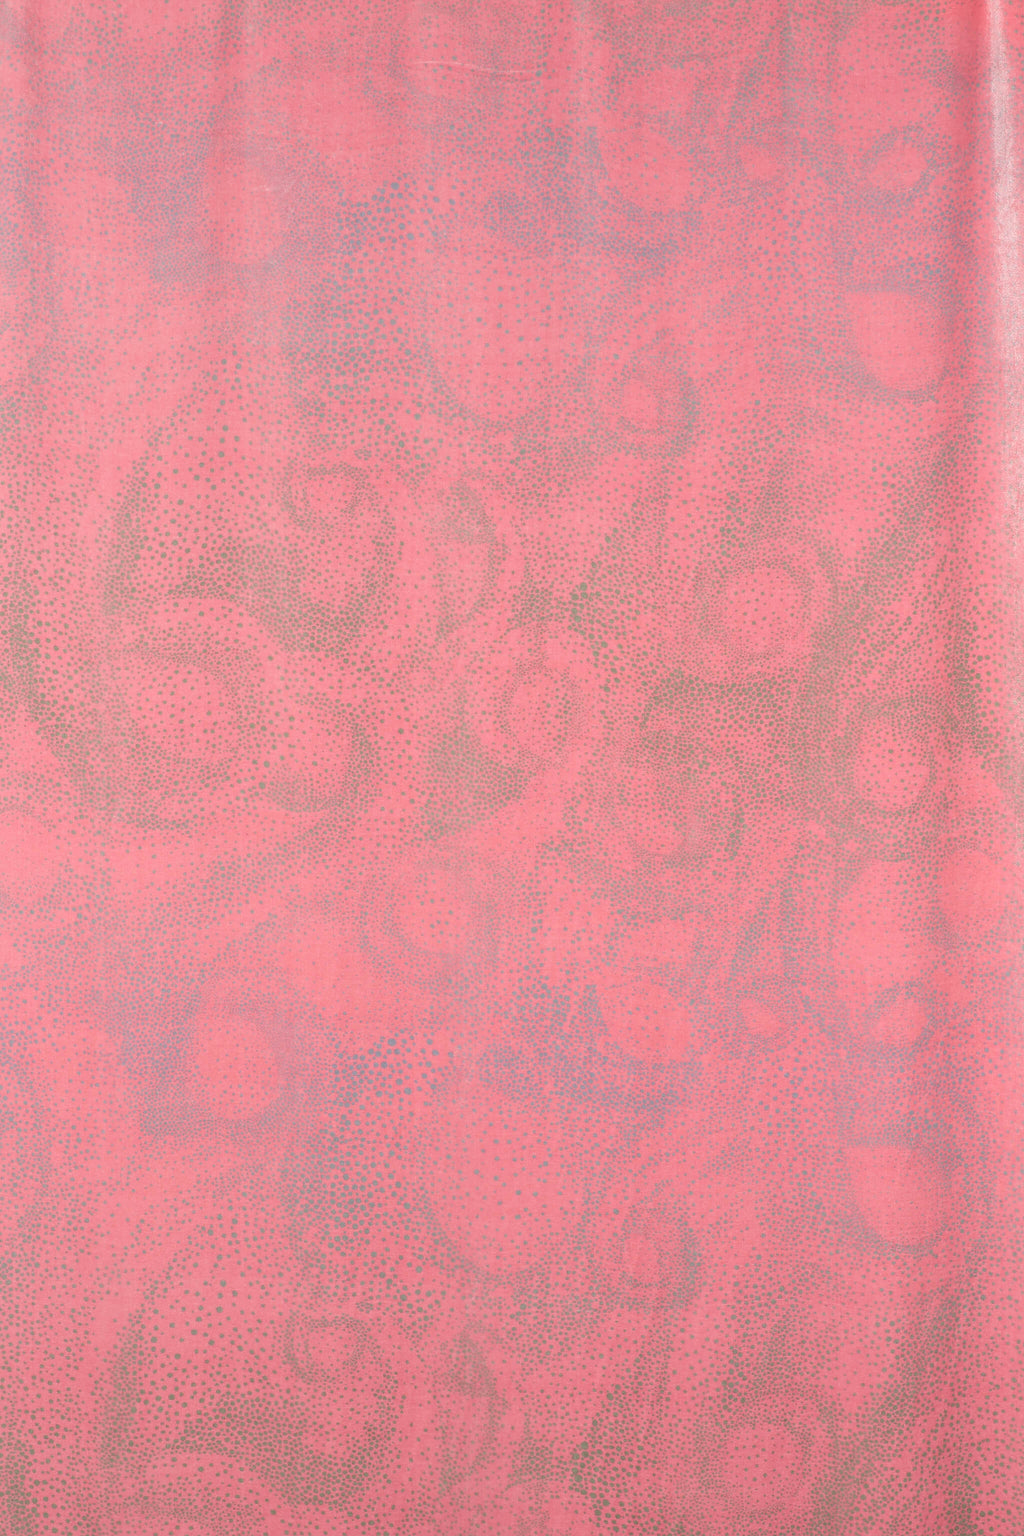 Aurora scarlet fabric design silk velvet full size view by GvE&Co (Georgina von Etzdorf)